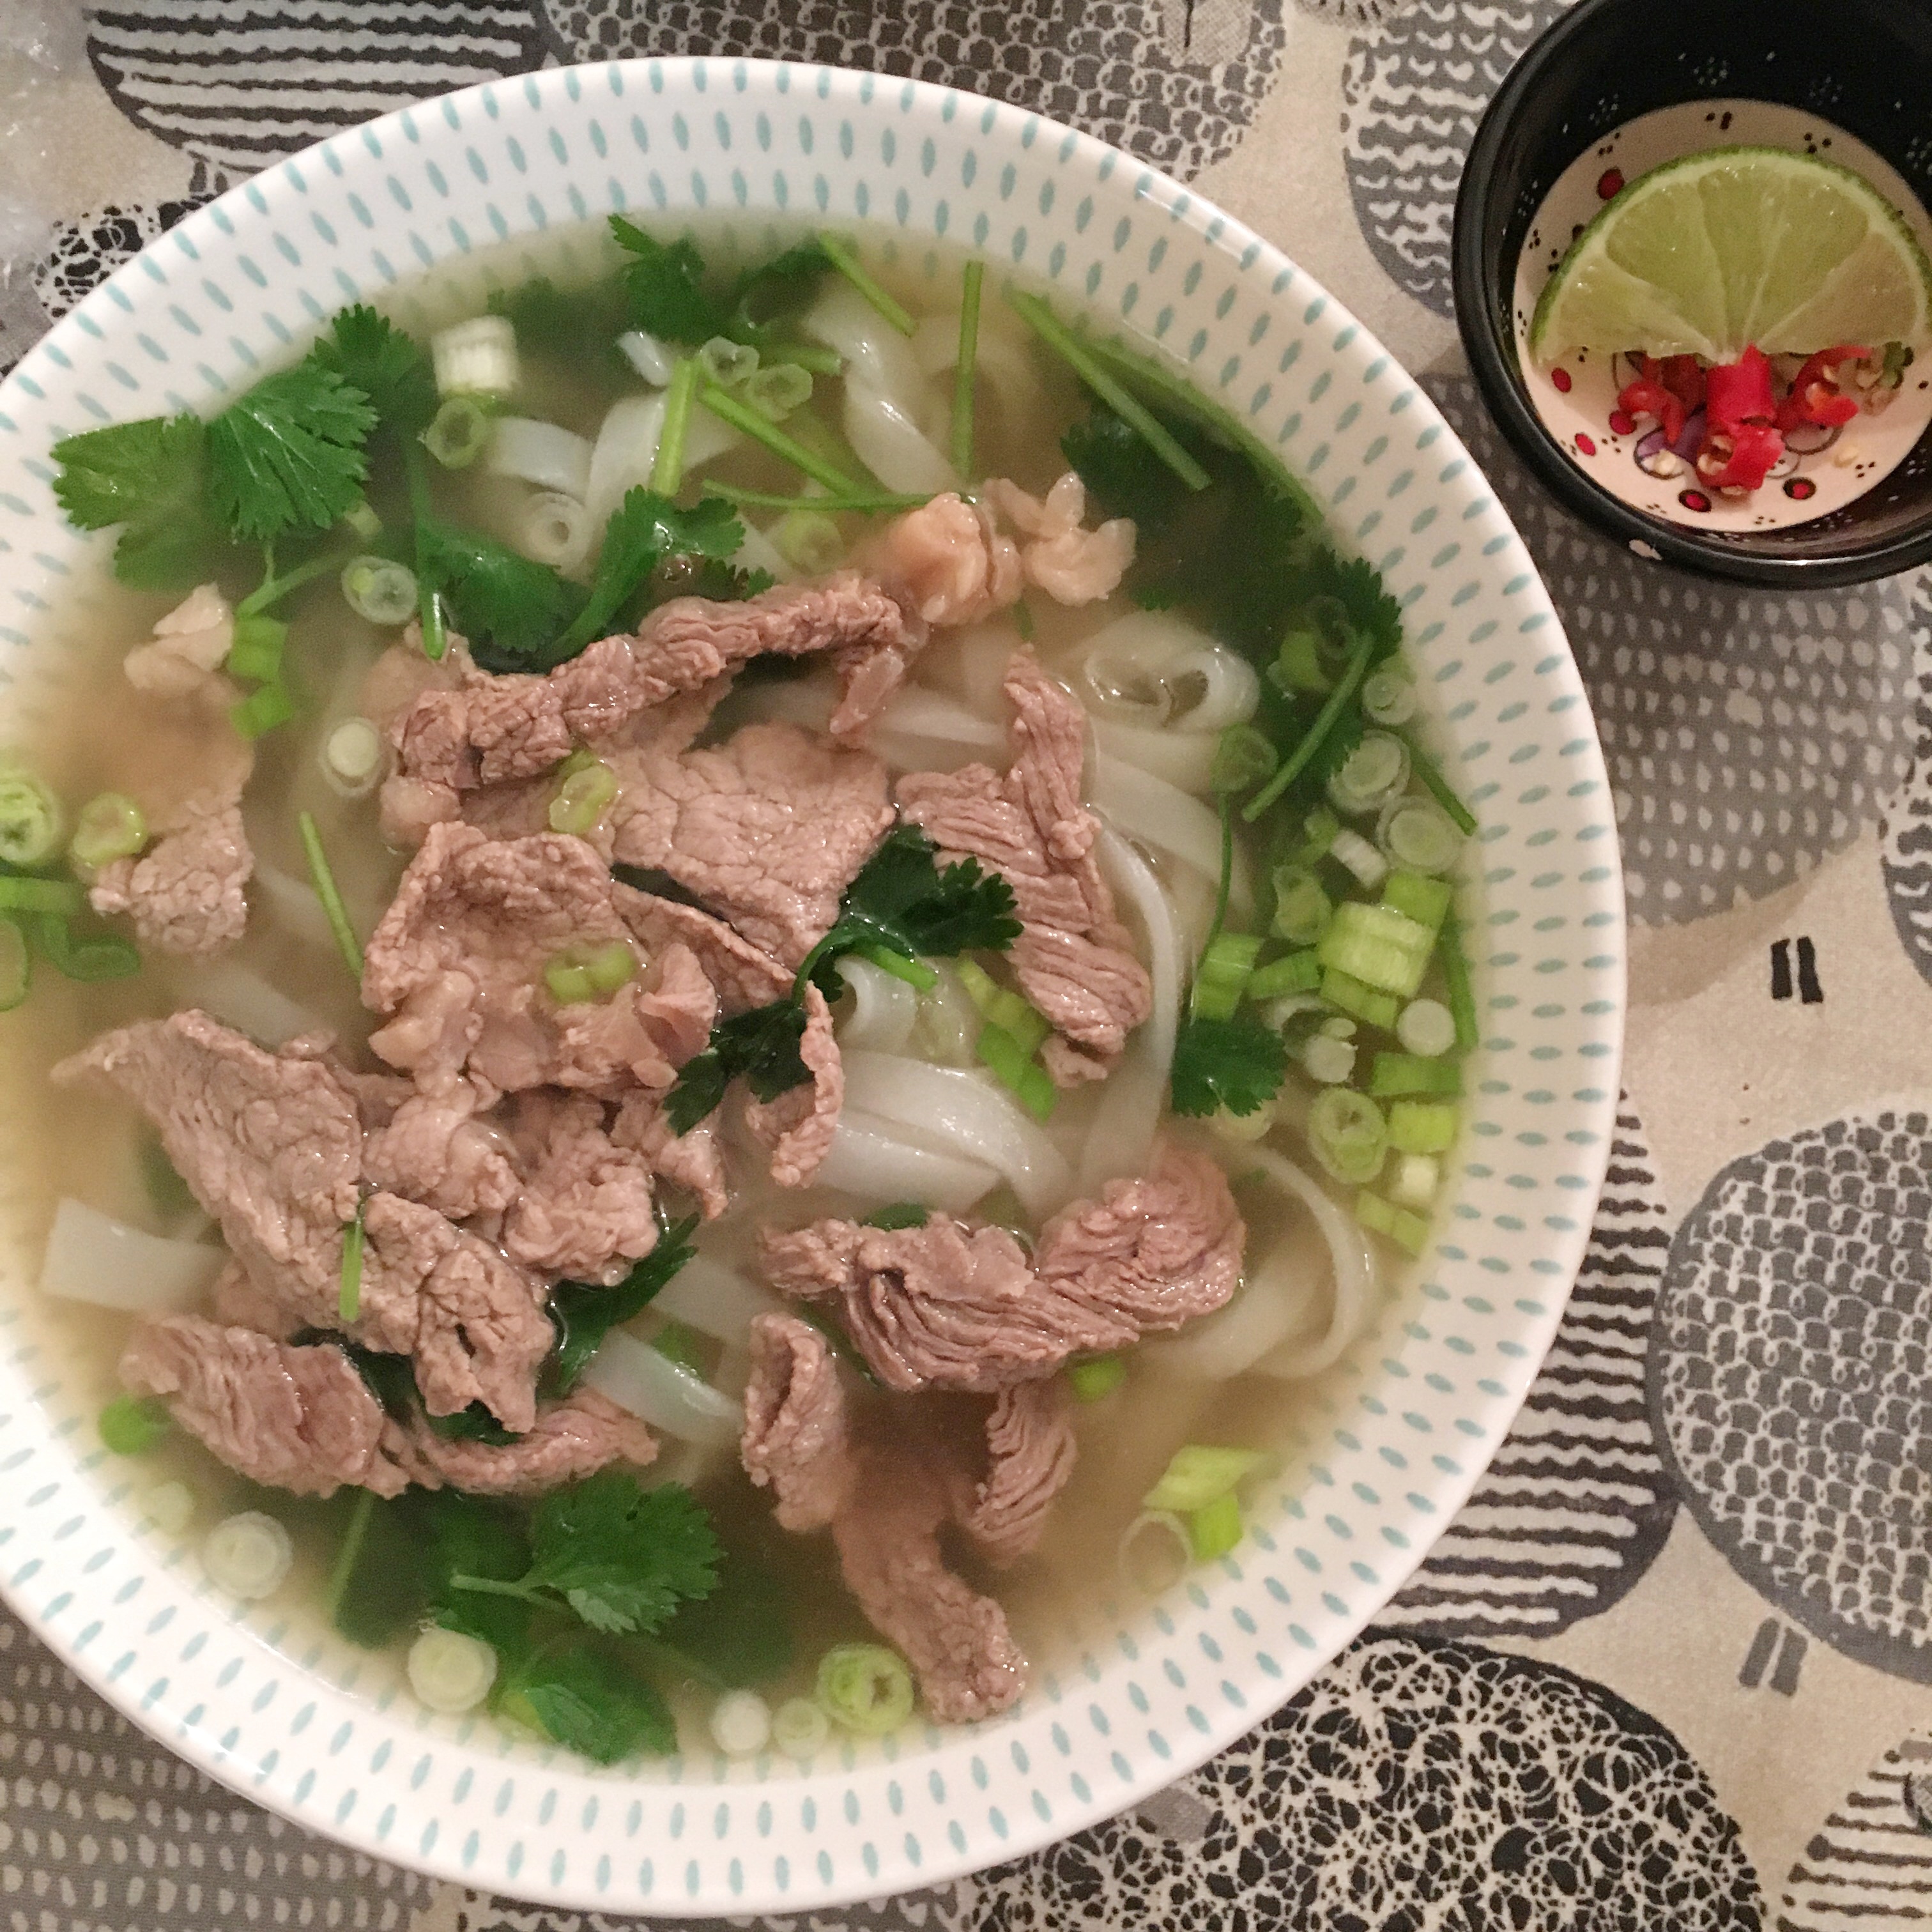 越南牛肉粉beef Pho的做法步骤图 Leungdoudou 下厨房